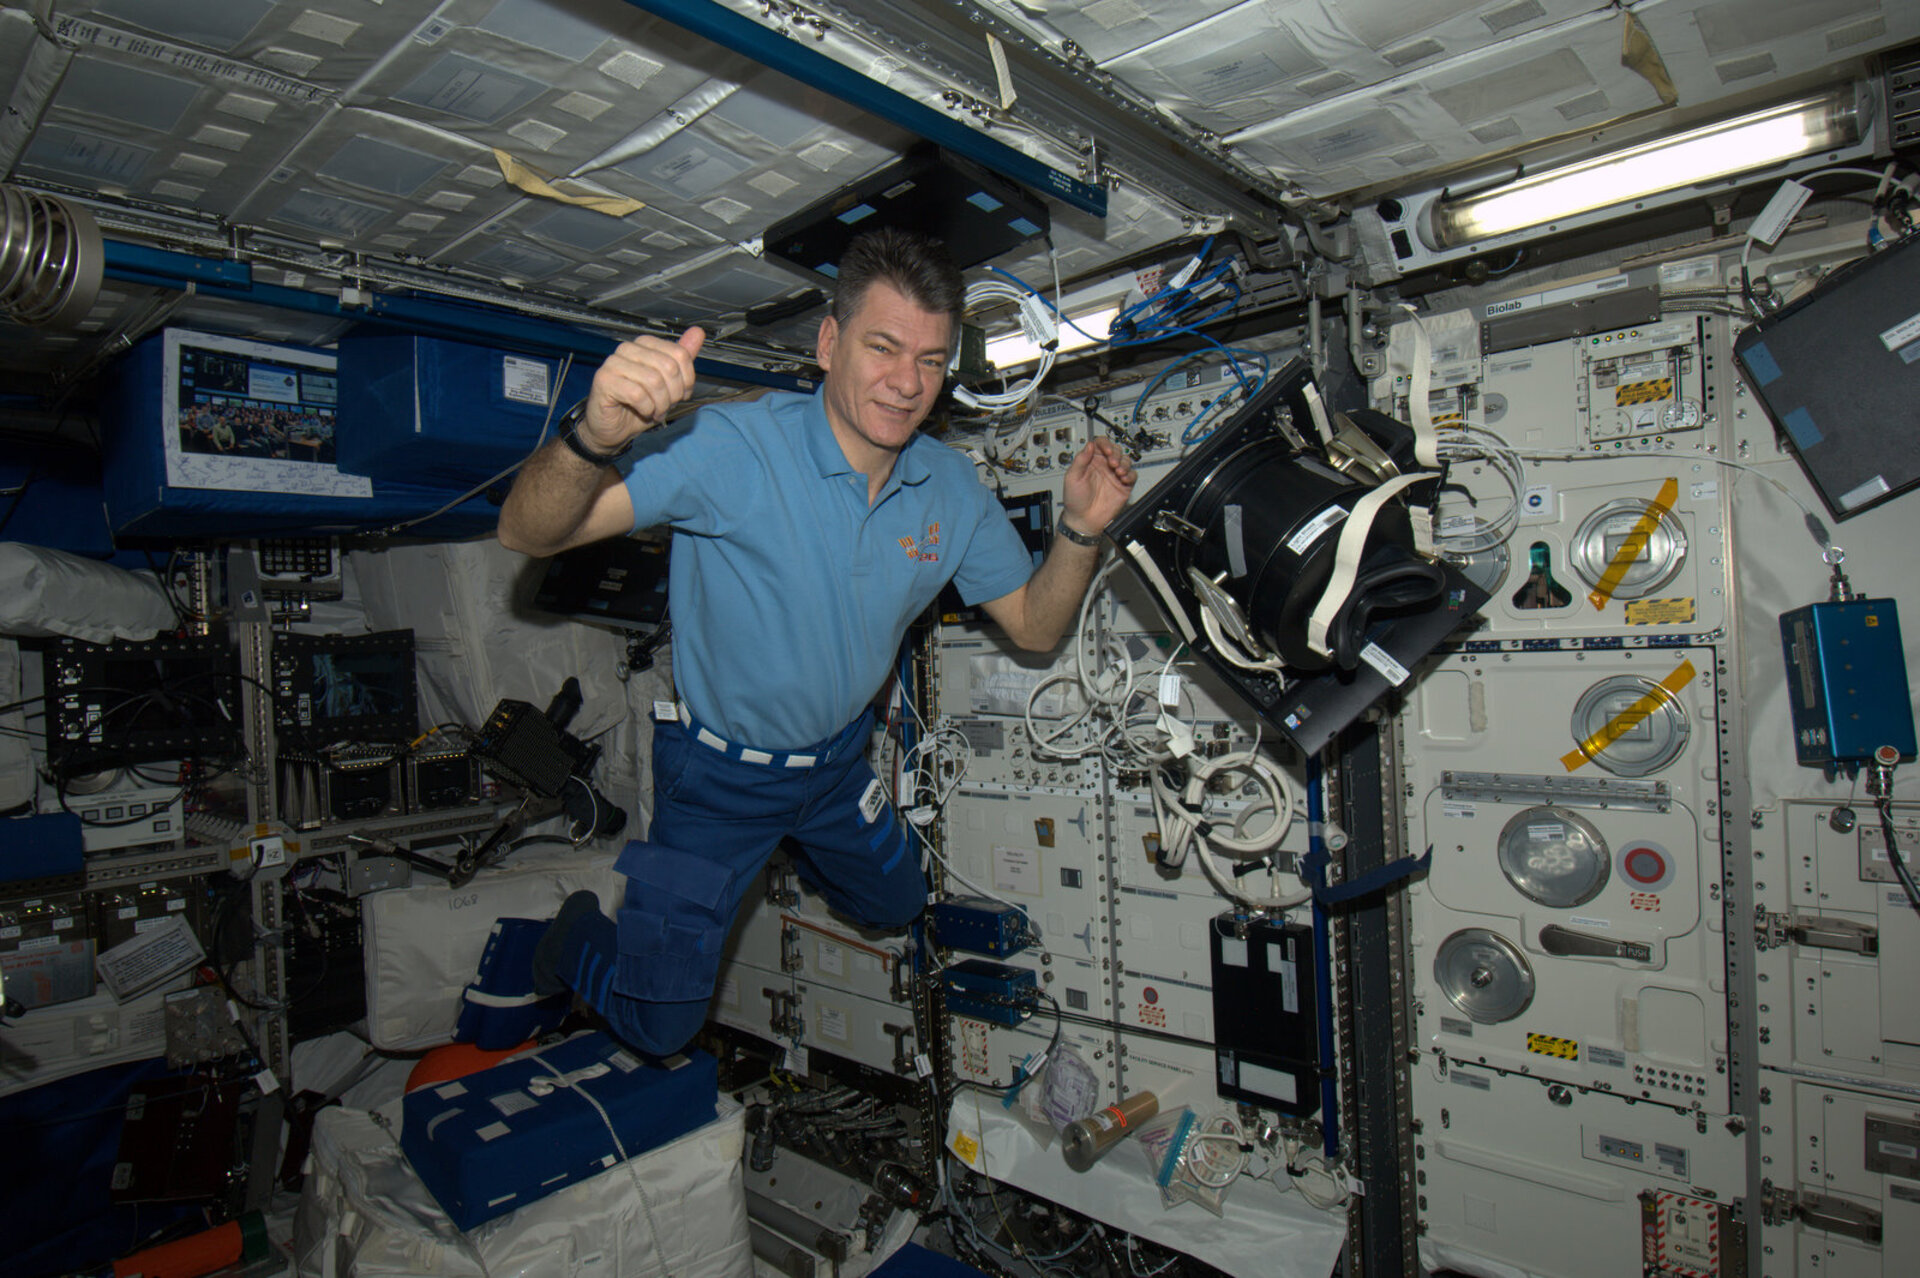 ESA astronaut Paolo Nespoli preparing experiment in Columbus in 2011